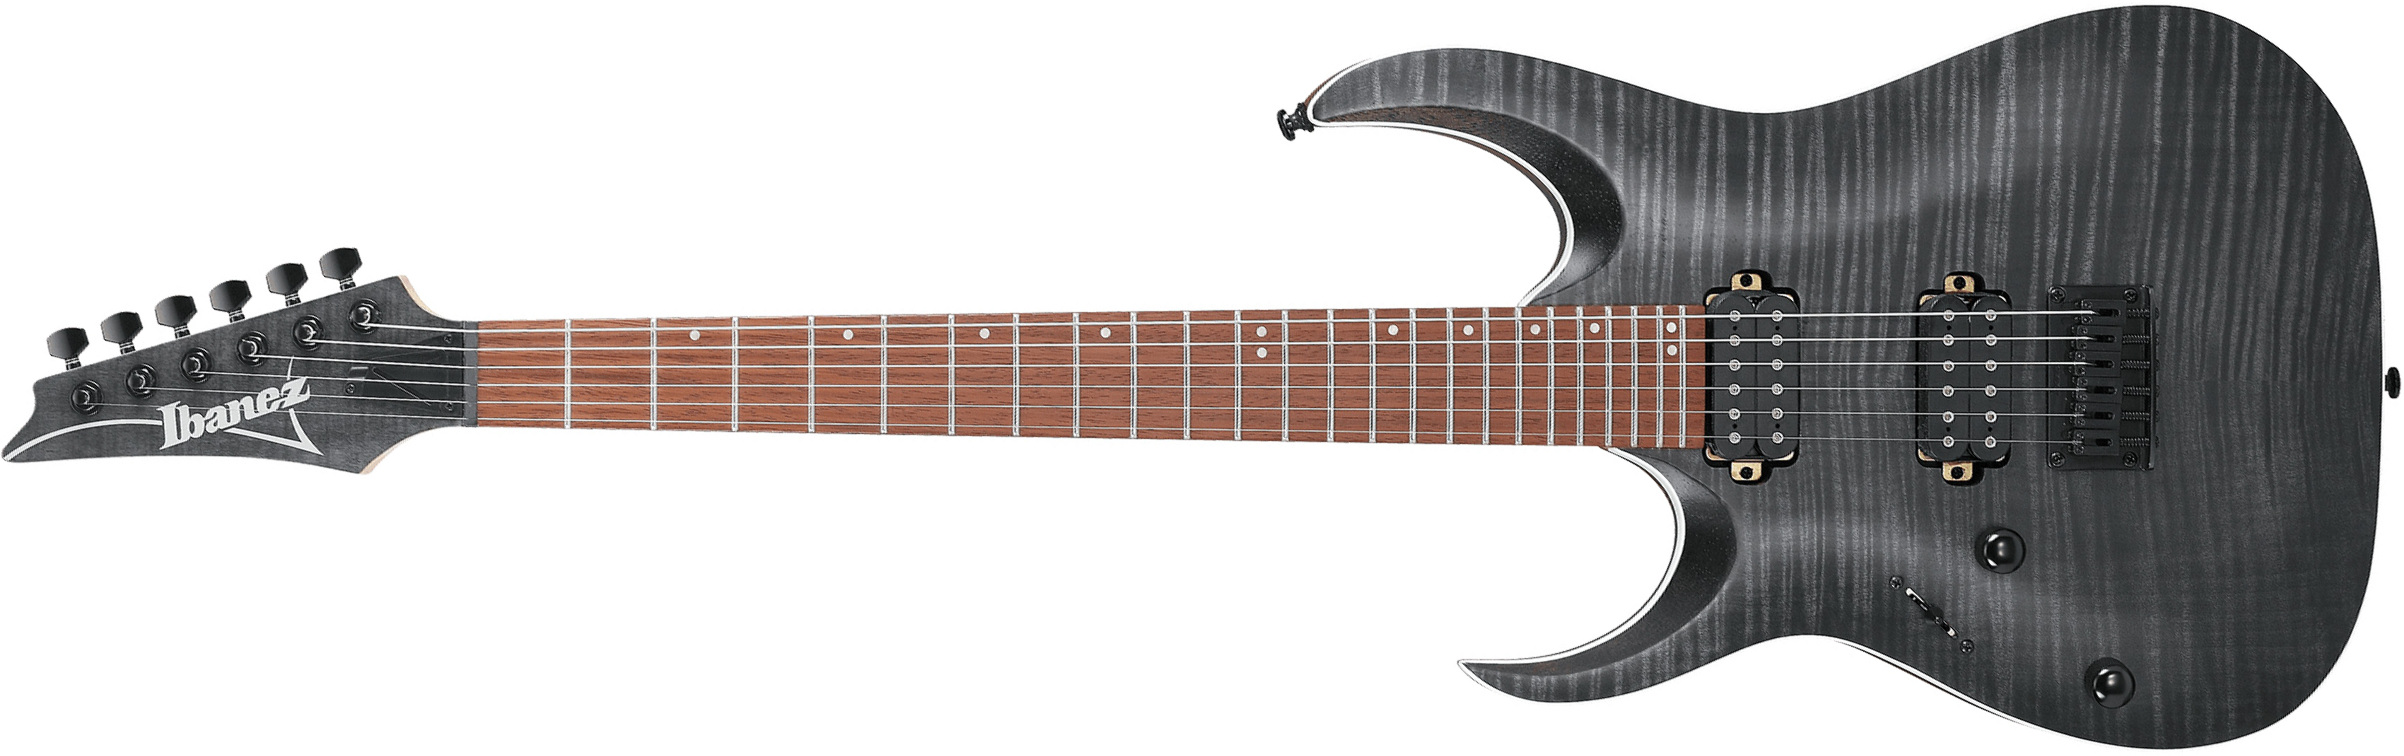 Ibanez Rga42fml Tgf Lh Standard Gaucher 2h Ht Rw - Transparent Grey Flat - Guitare Électrique Forme Str - Main picture